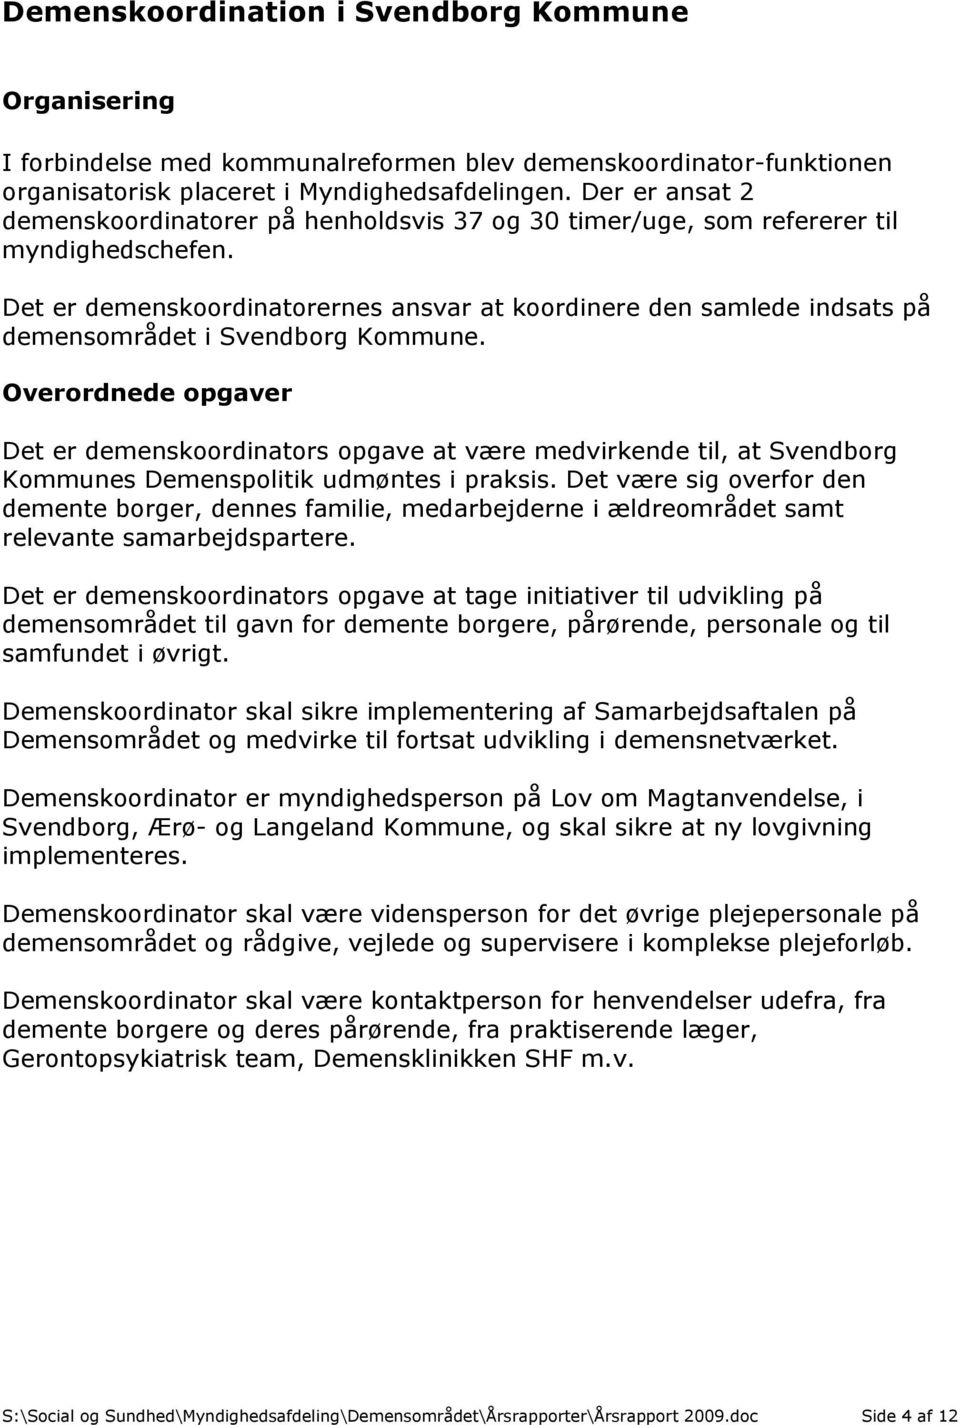 Det er demenskoordinatorernes ansvar at koordinere den samlede indsats på demensområdet i Svendborg Kommune.